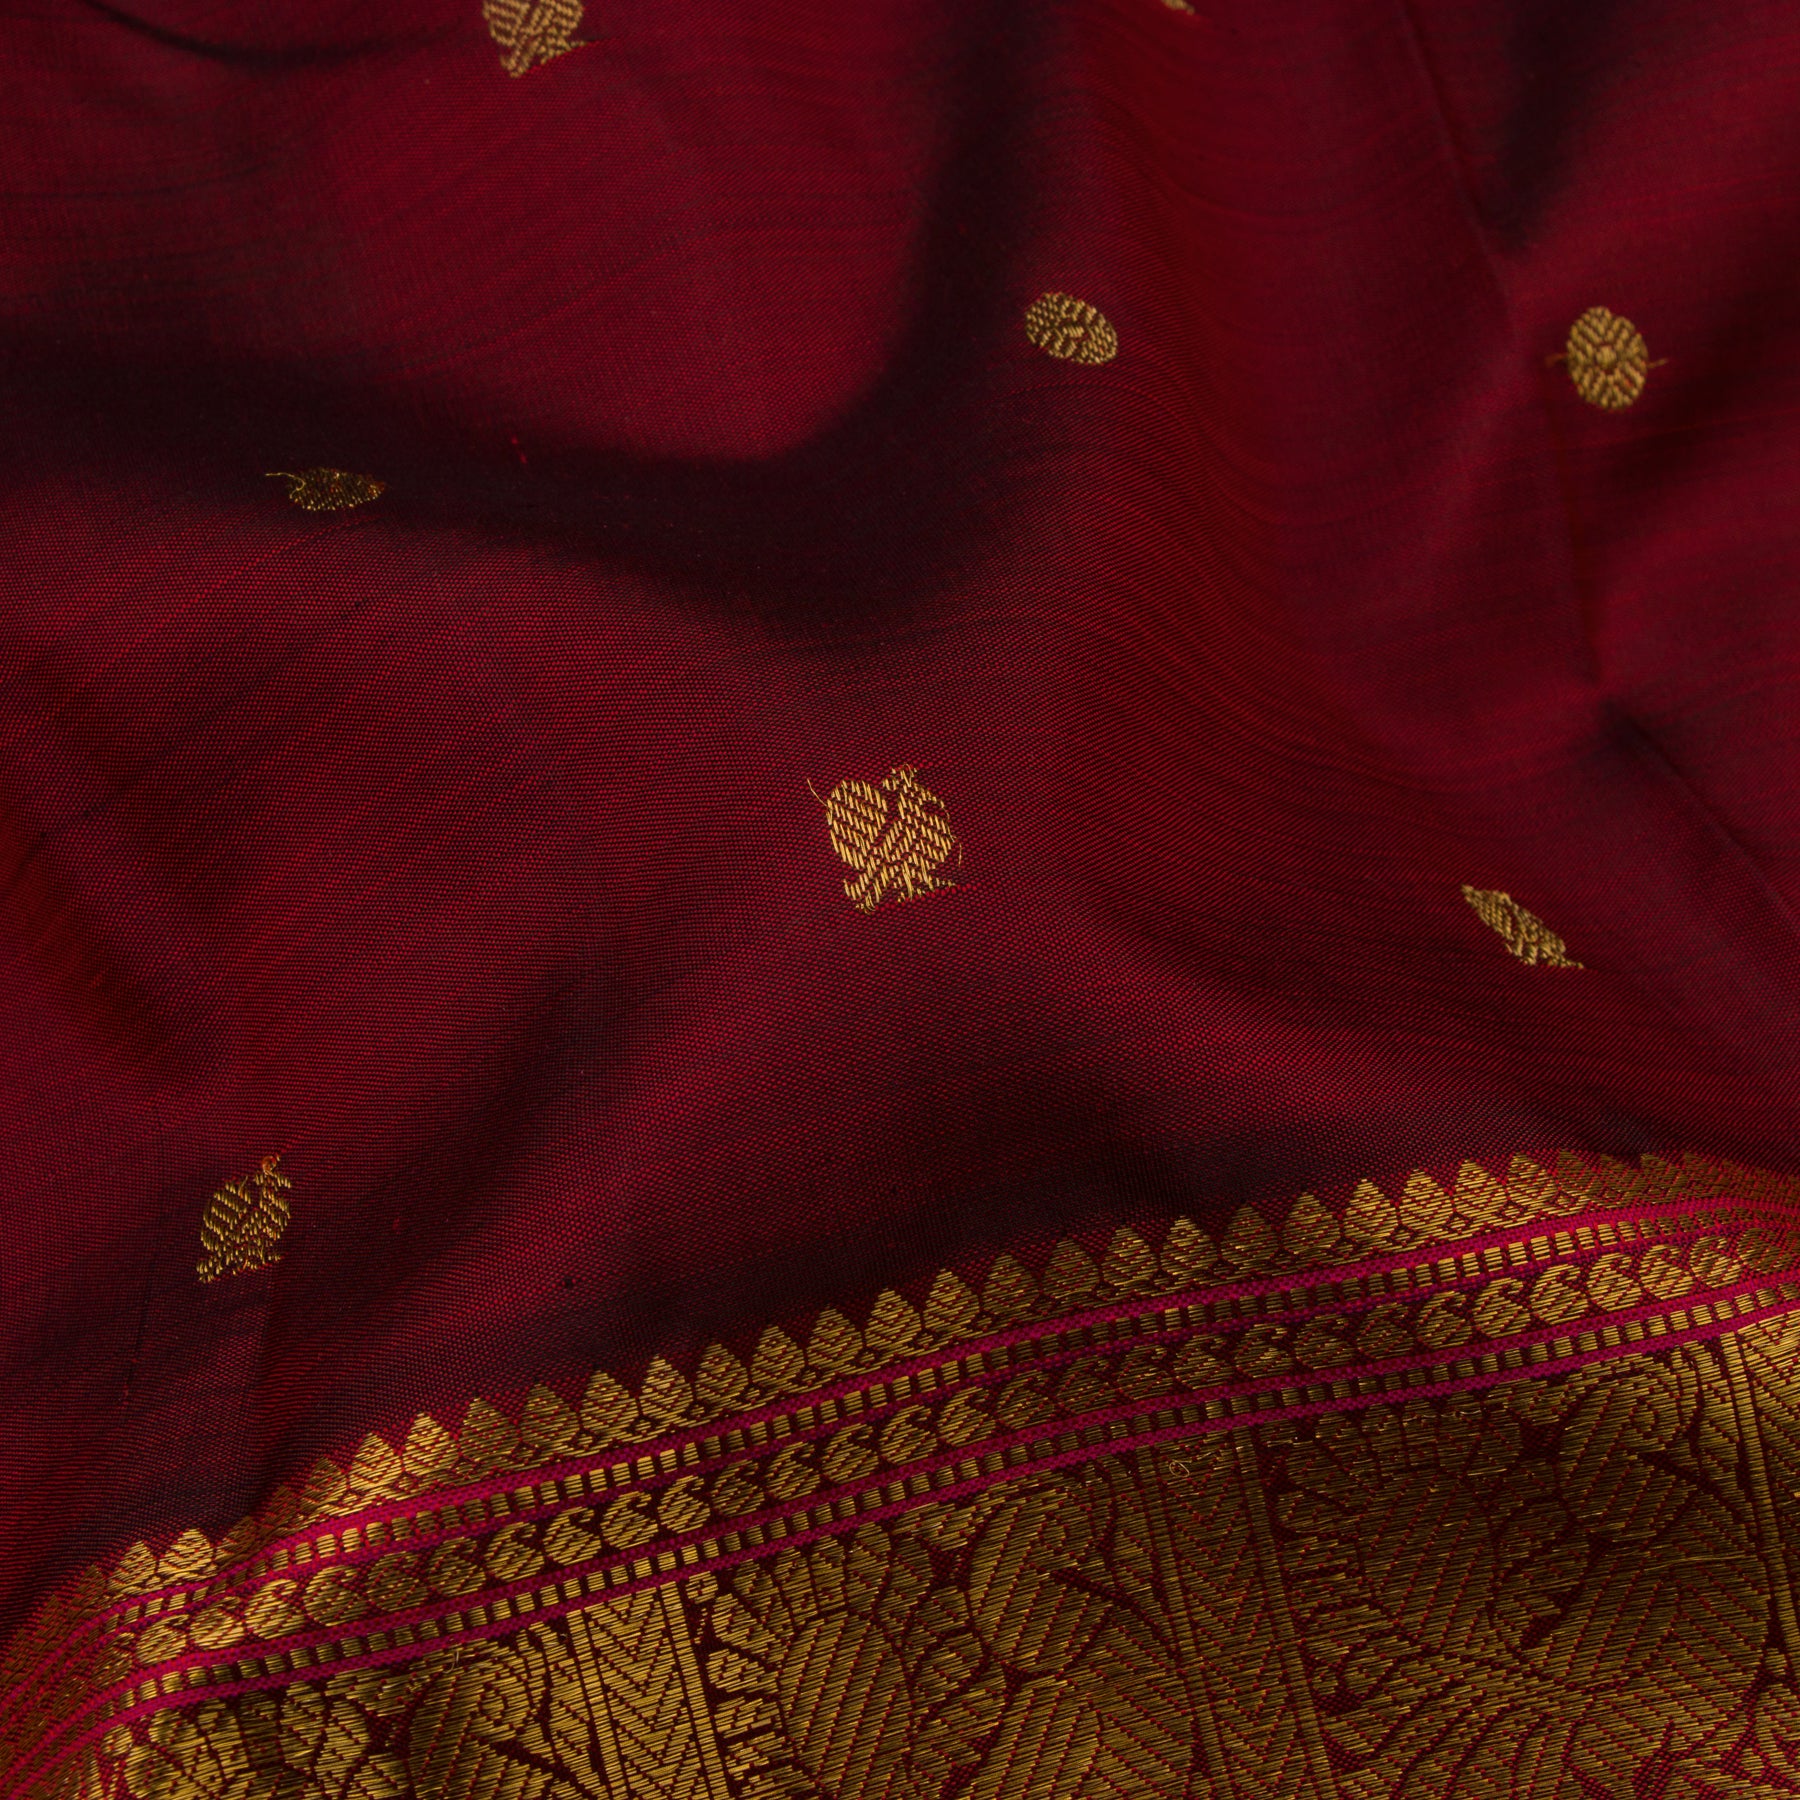 Kanakavalli Kanjivaram Silk Sari 22-110-HS001-08906 - Fabric View